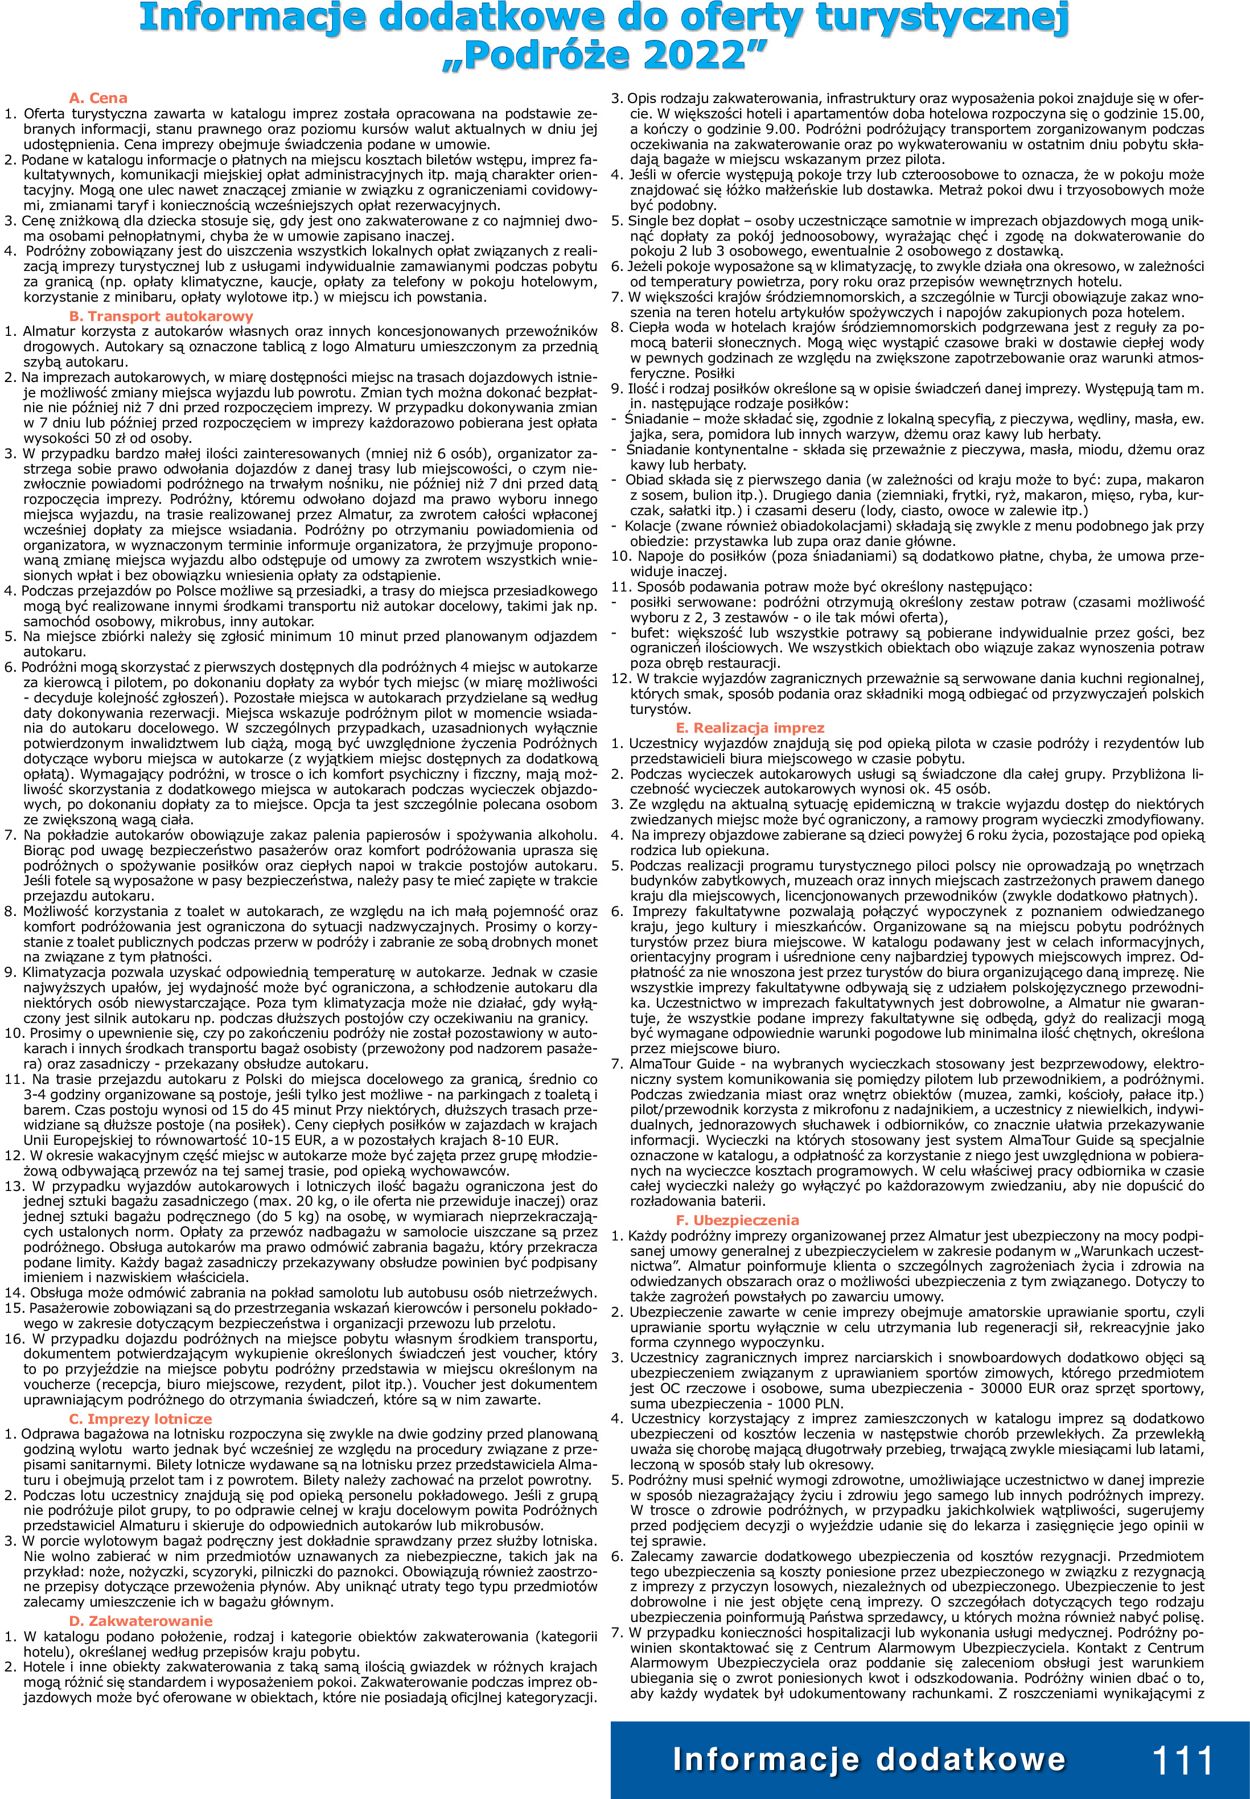 Gazetka promocyjna Almatur - 01.01-31.12.2022 (Strona 111)